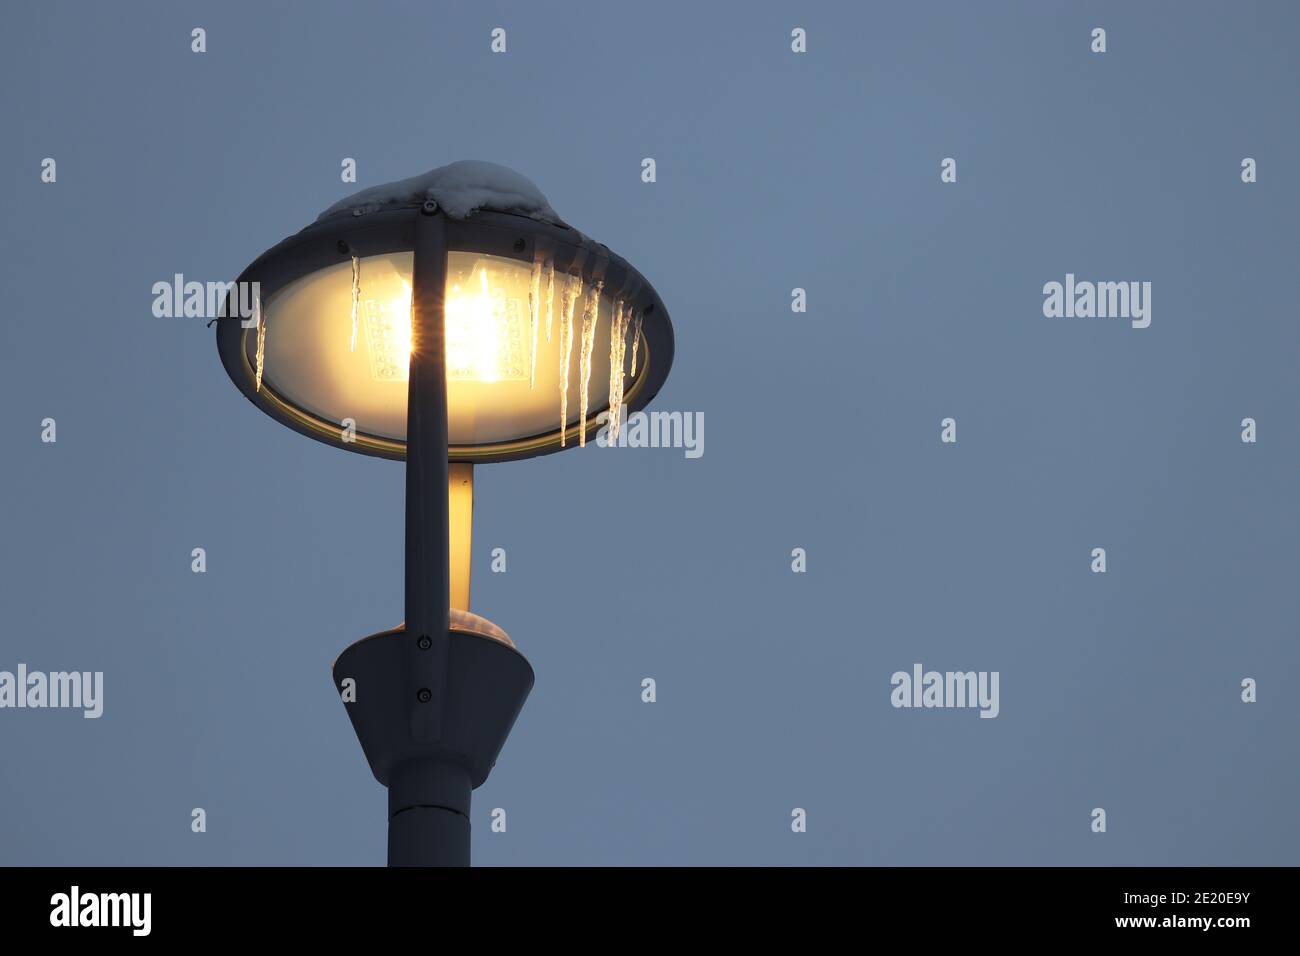 Lampe LED brillante recouverte de glaçons sur fond de ciel d'hiver. Éclairage électrique, lanterne de rue à économie d'énergie Banque D'Images